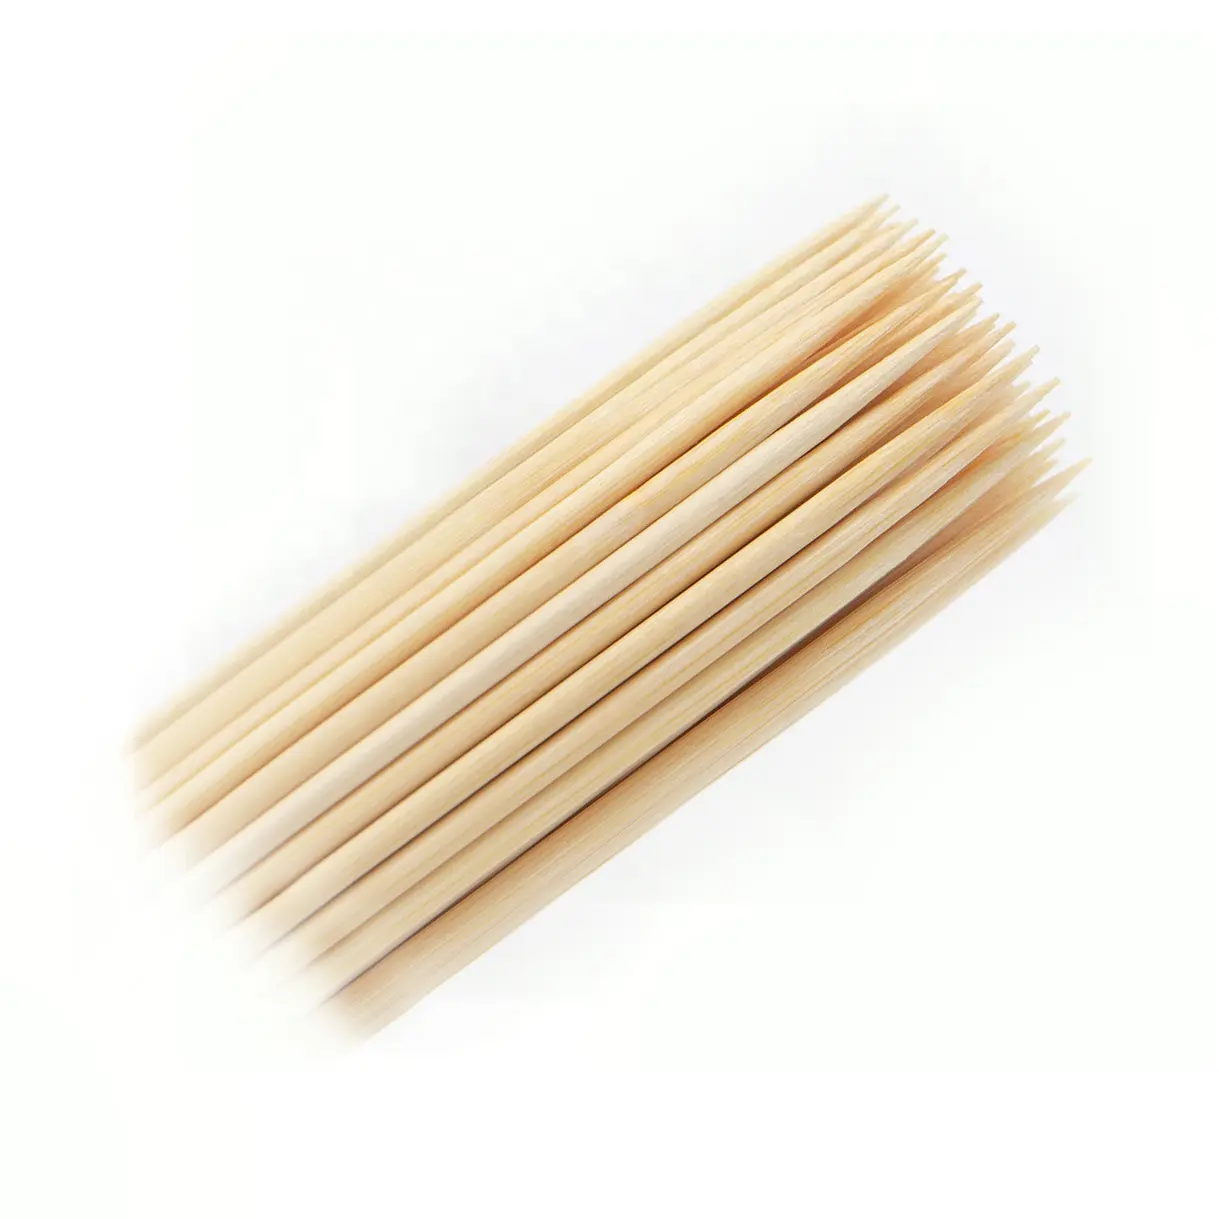 Spiedino di bambù usa e getta a prezzo competitivo all'ingrosso